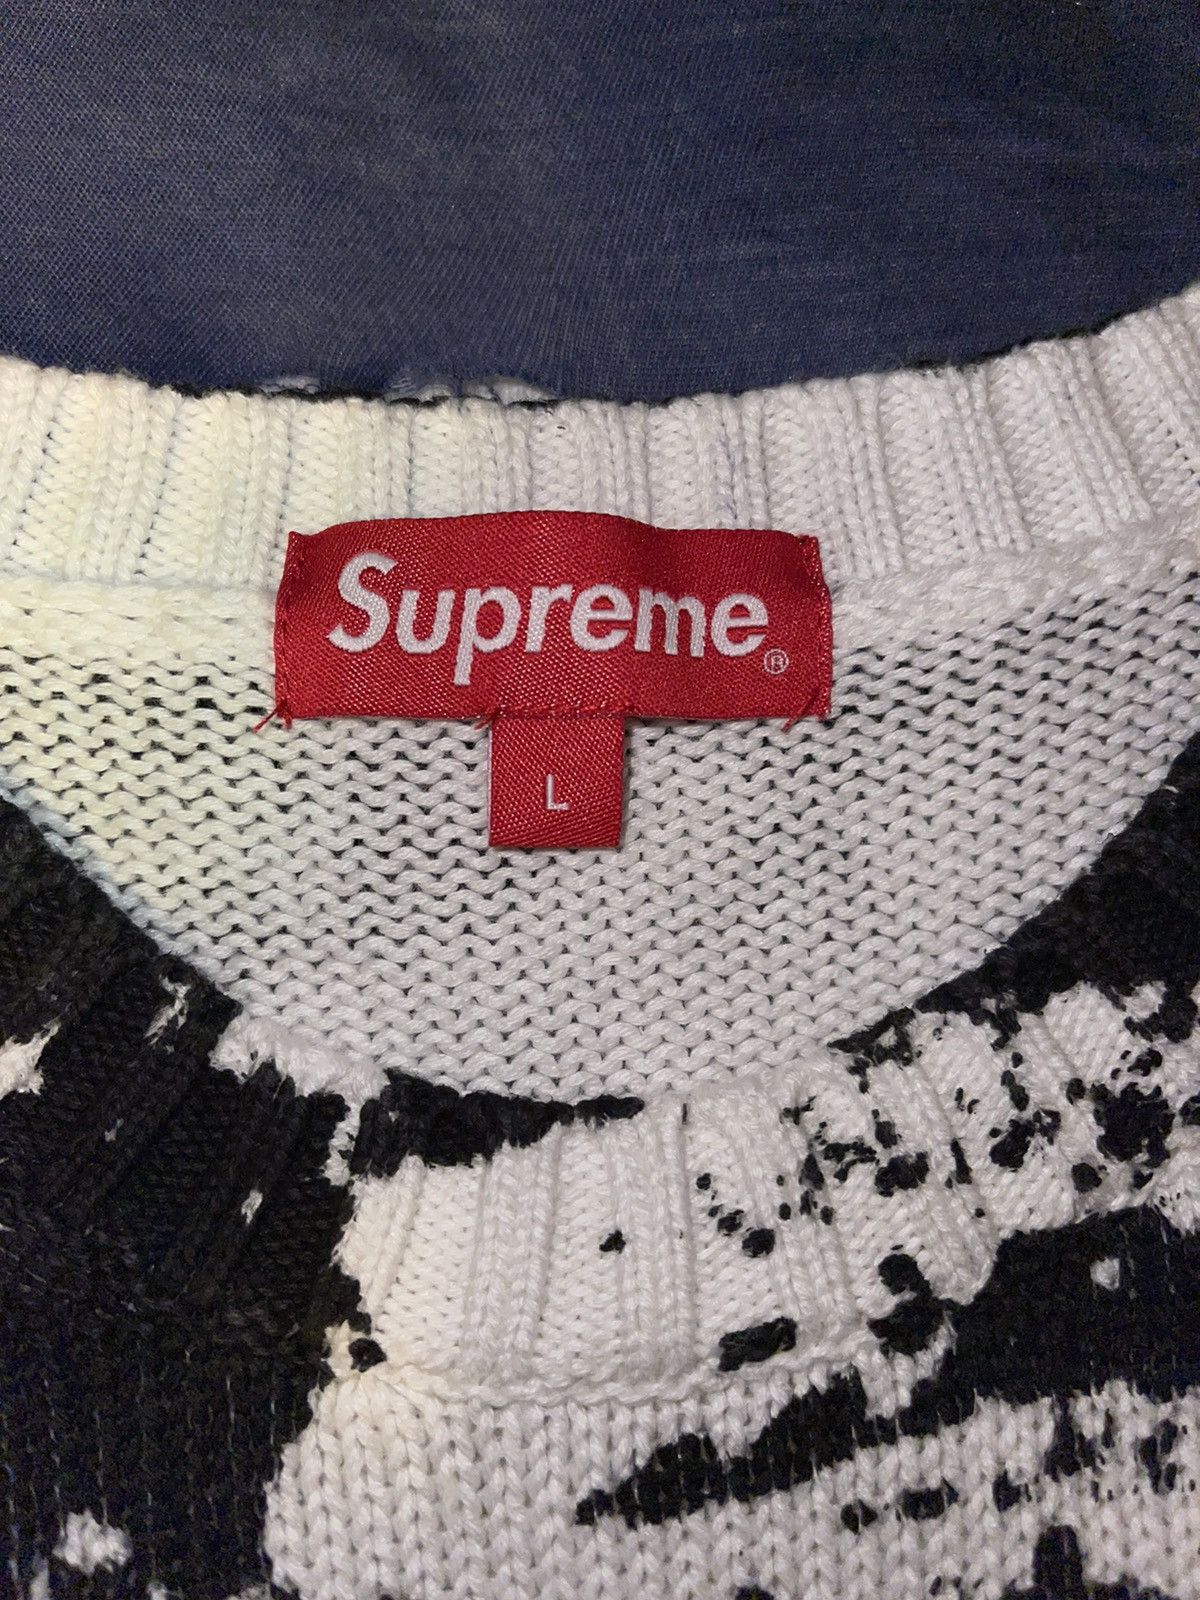 Supreme Supreme is Love Sweater White